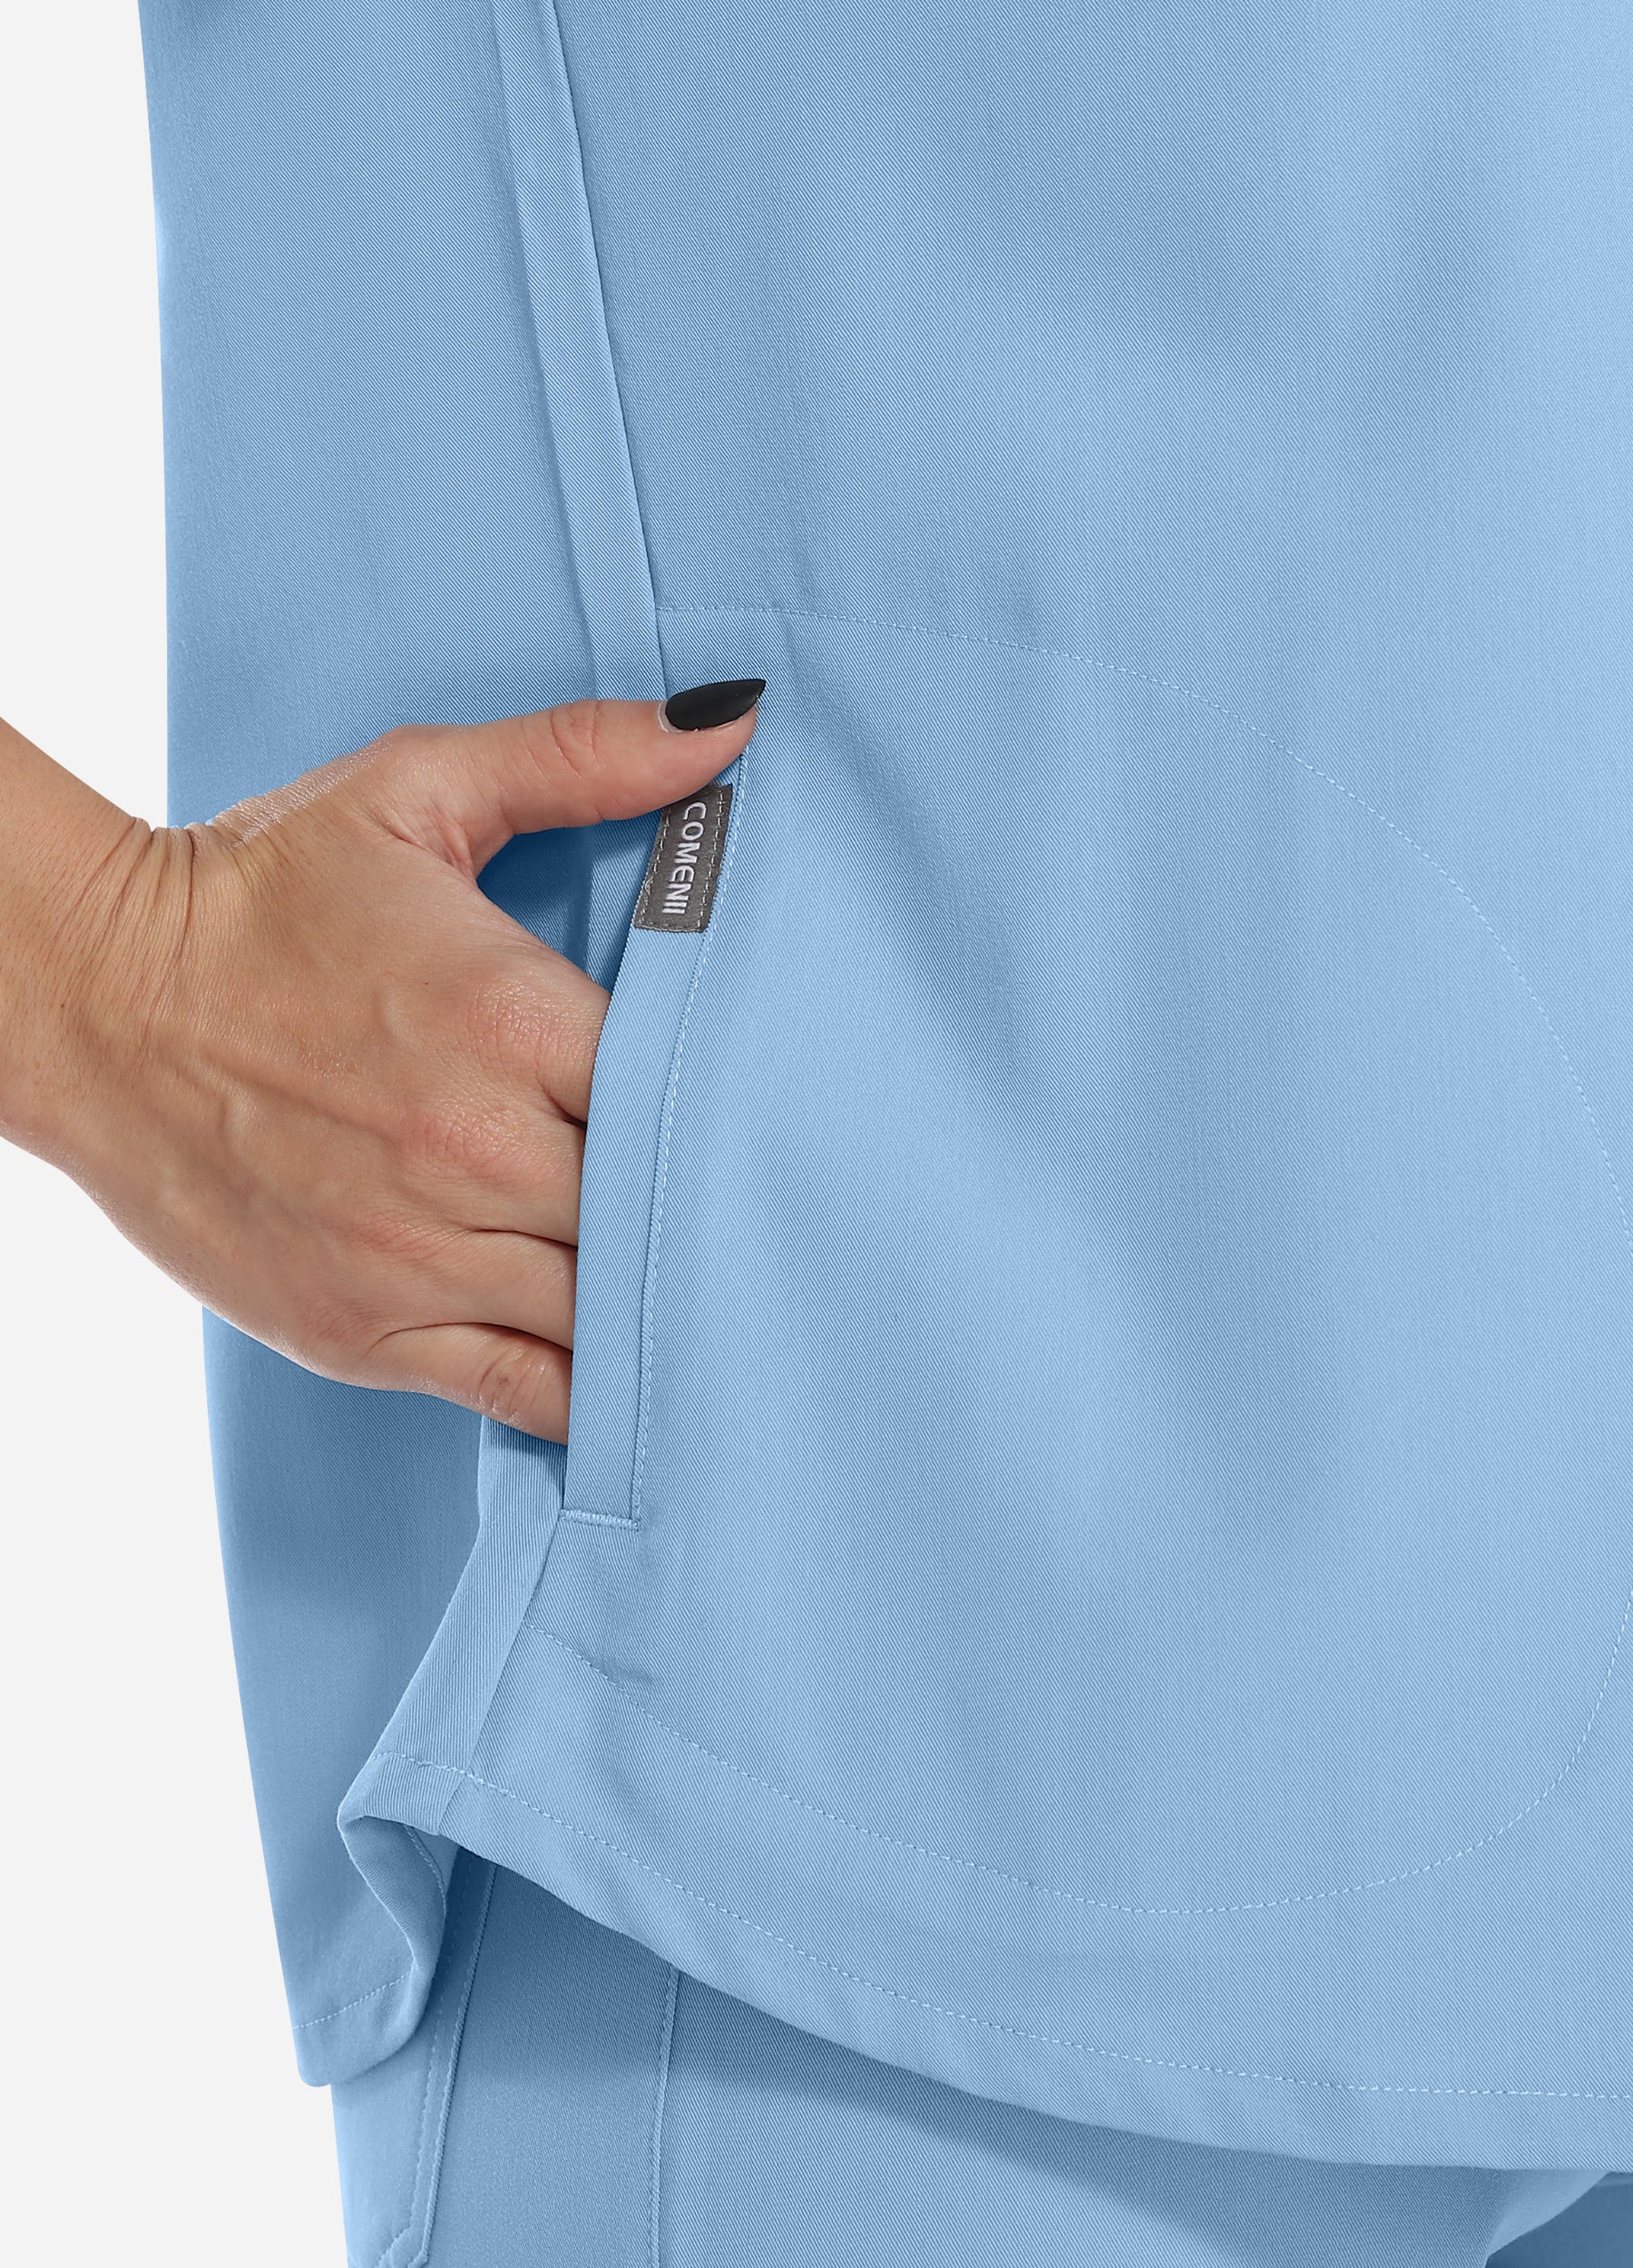 Blusa médica de 3 bolsillos con cuello mandarín para mujer